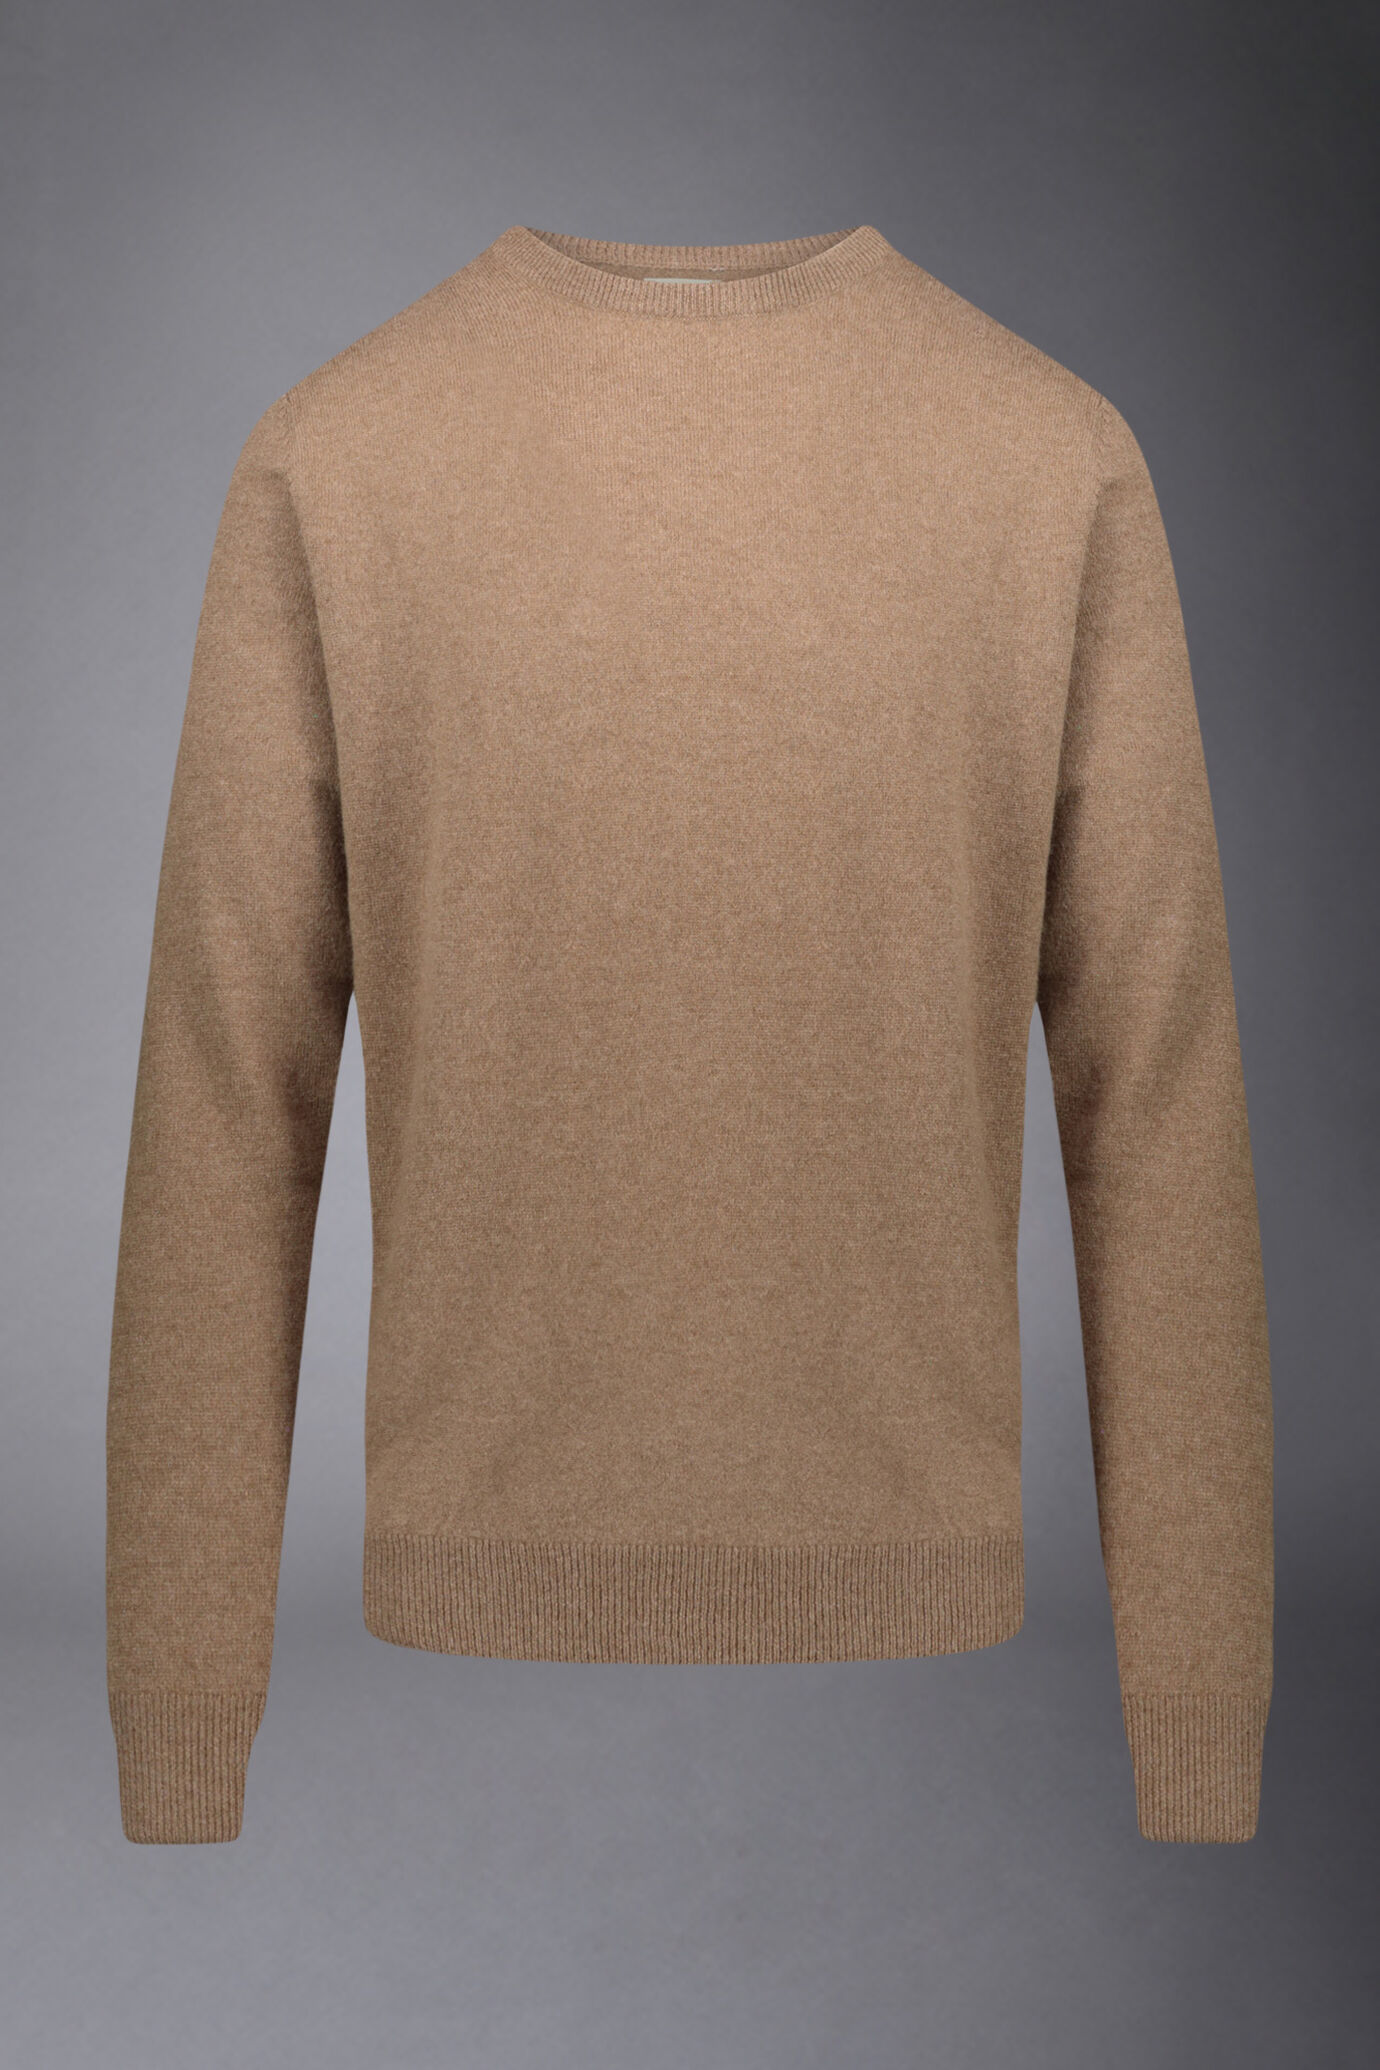 Round neck sweater 100% cashmere